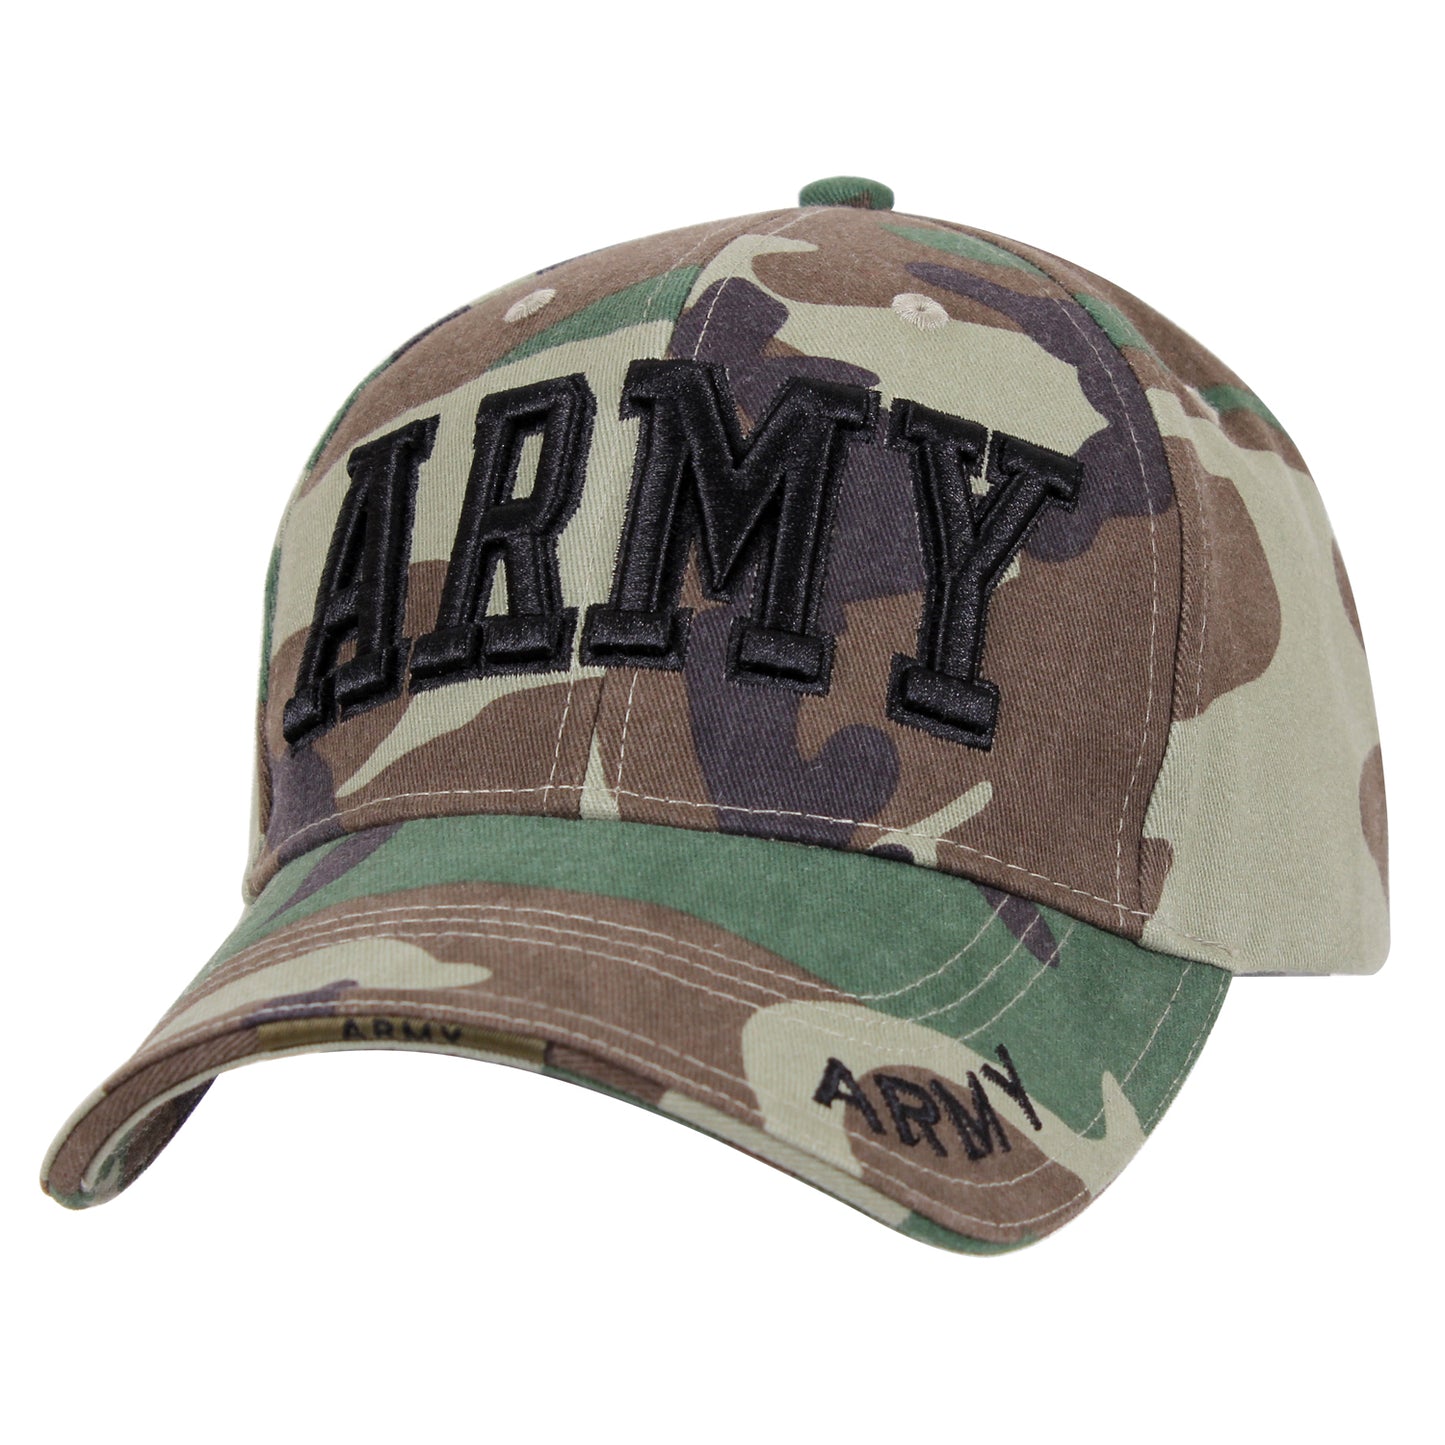 Army 字樣鴨舌帽 Cap